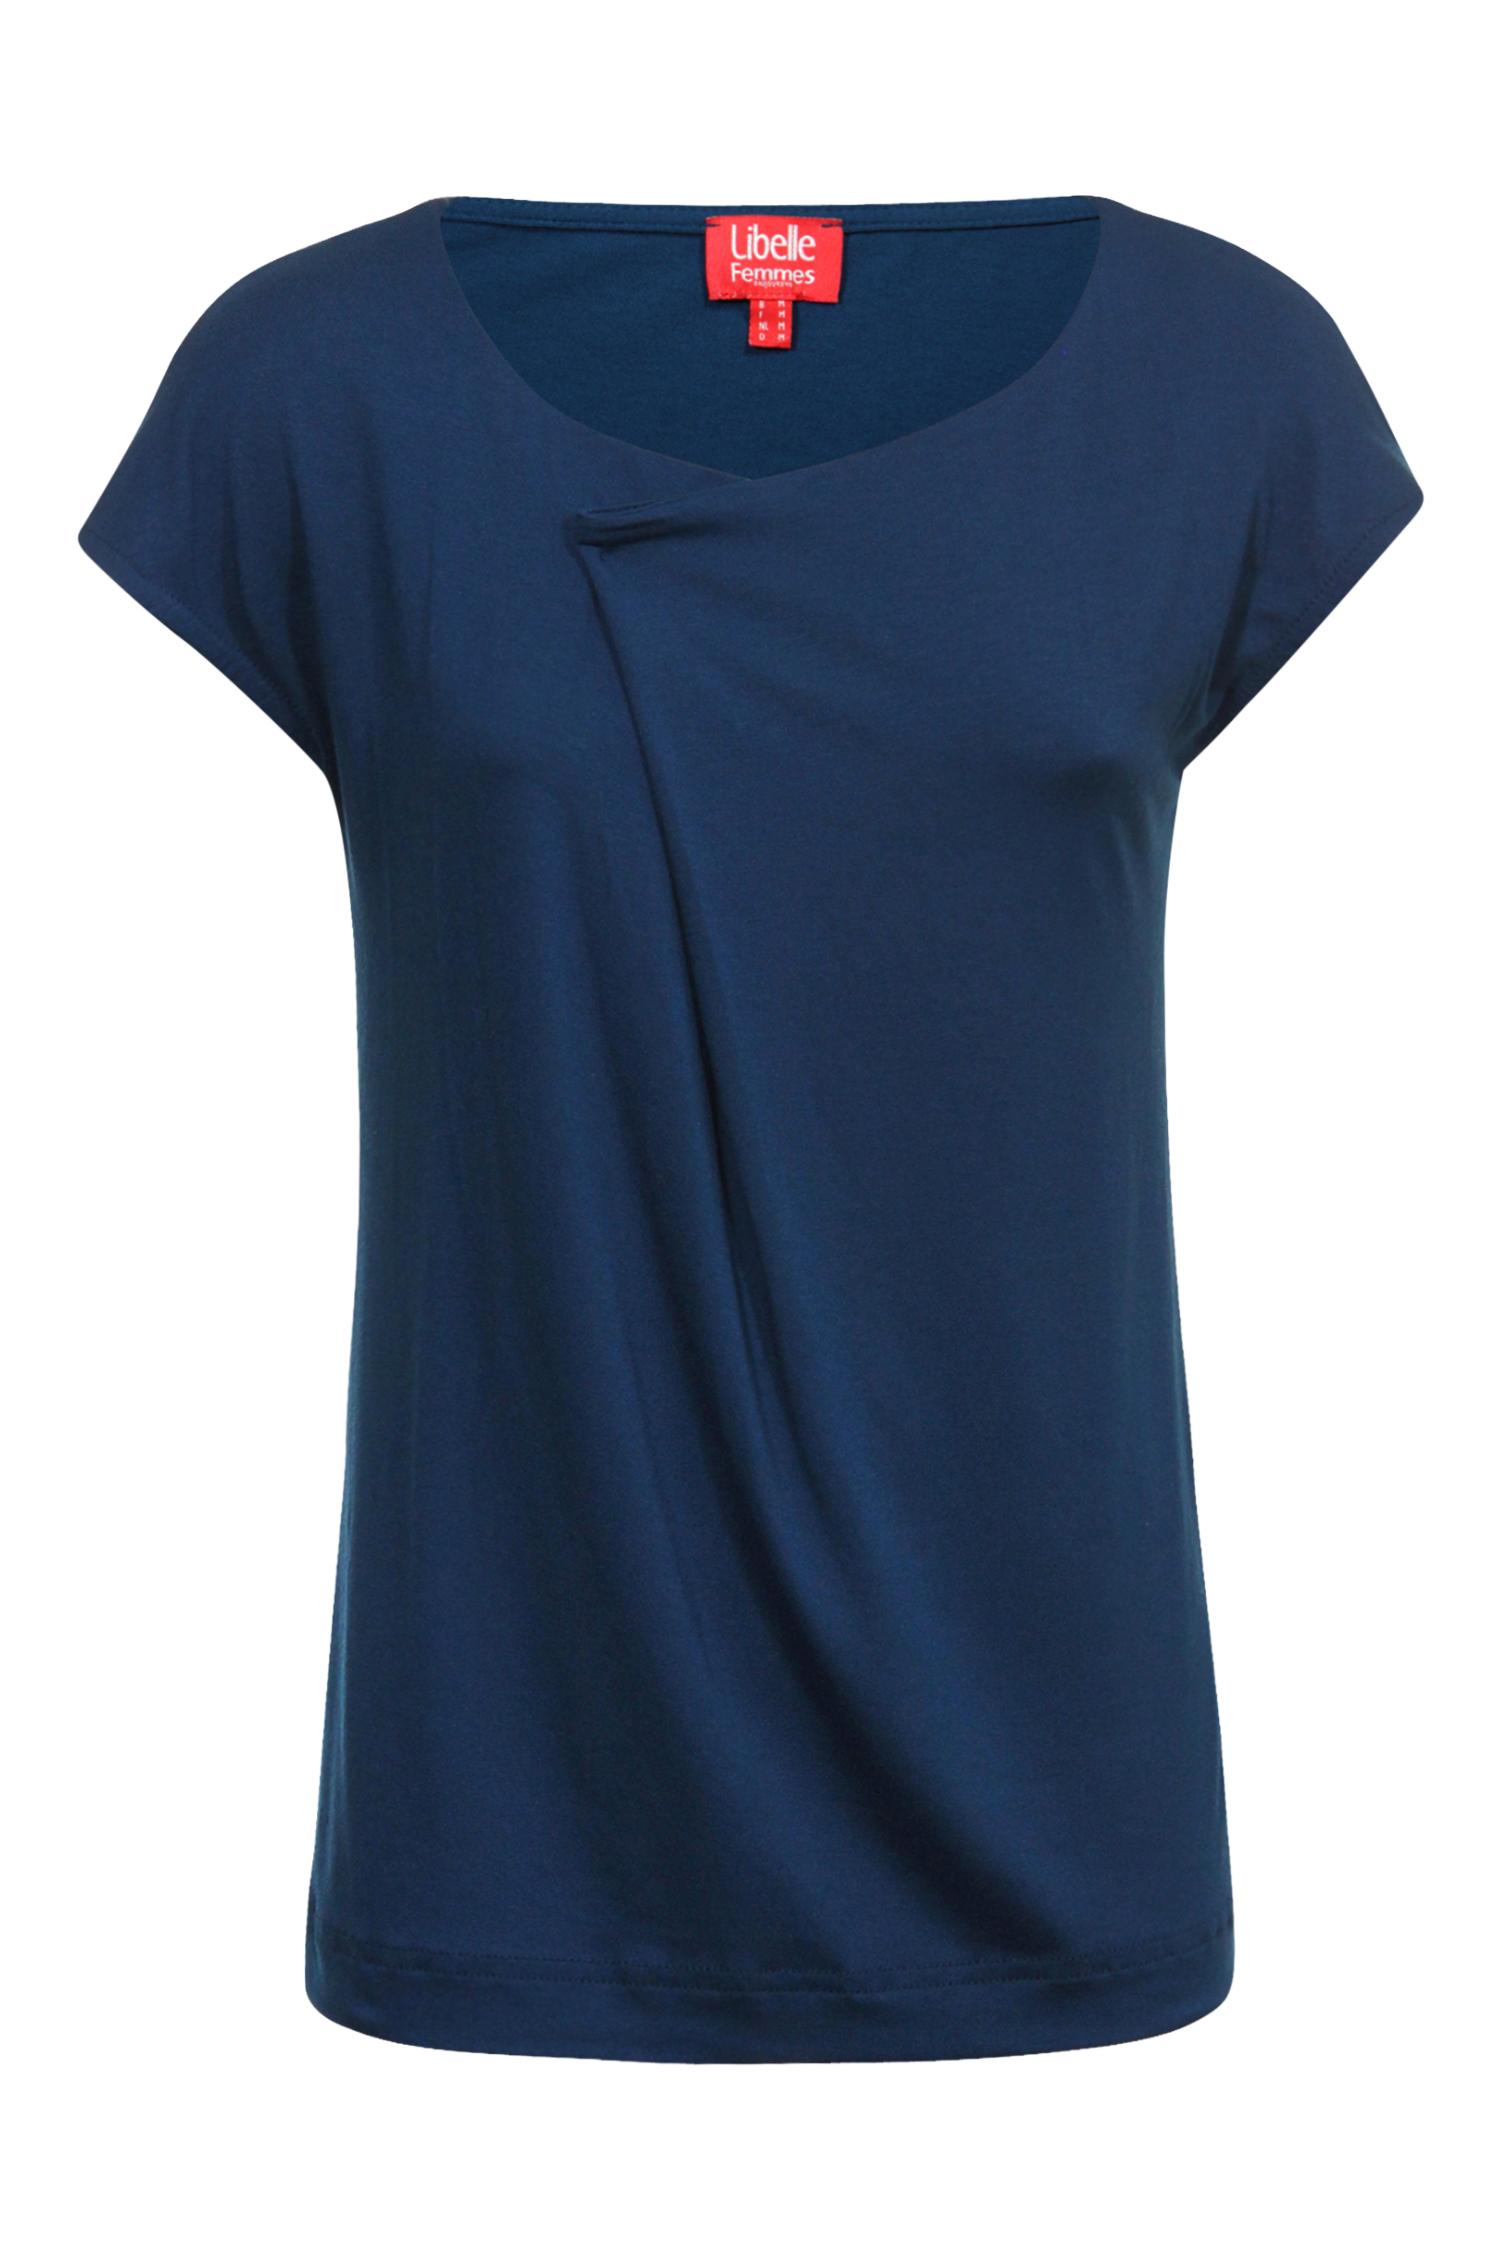 T-shirt bleu - 19,95 €